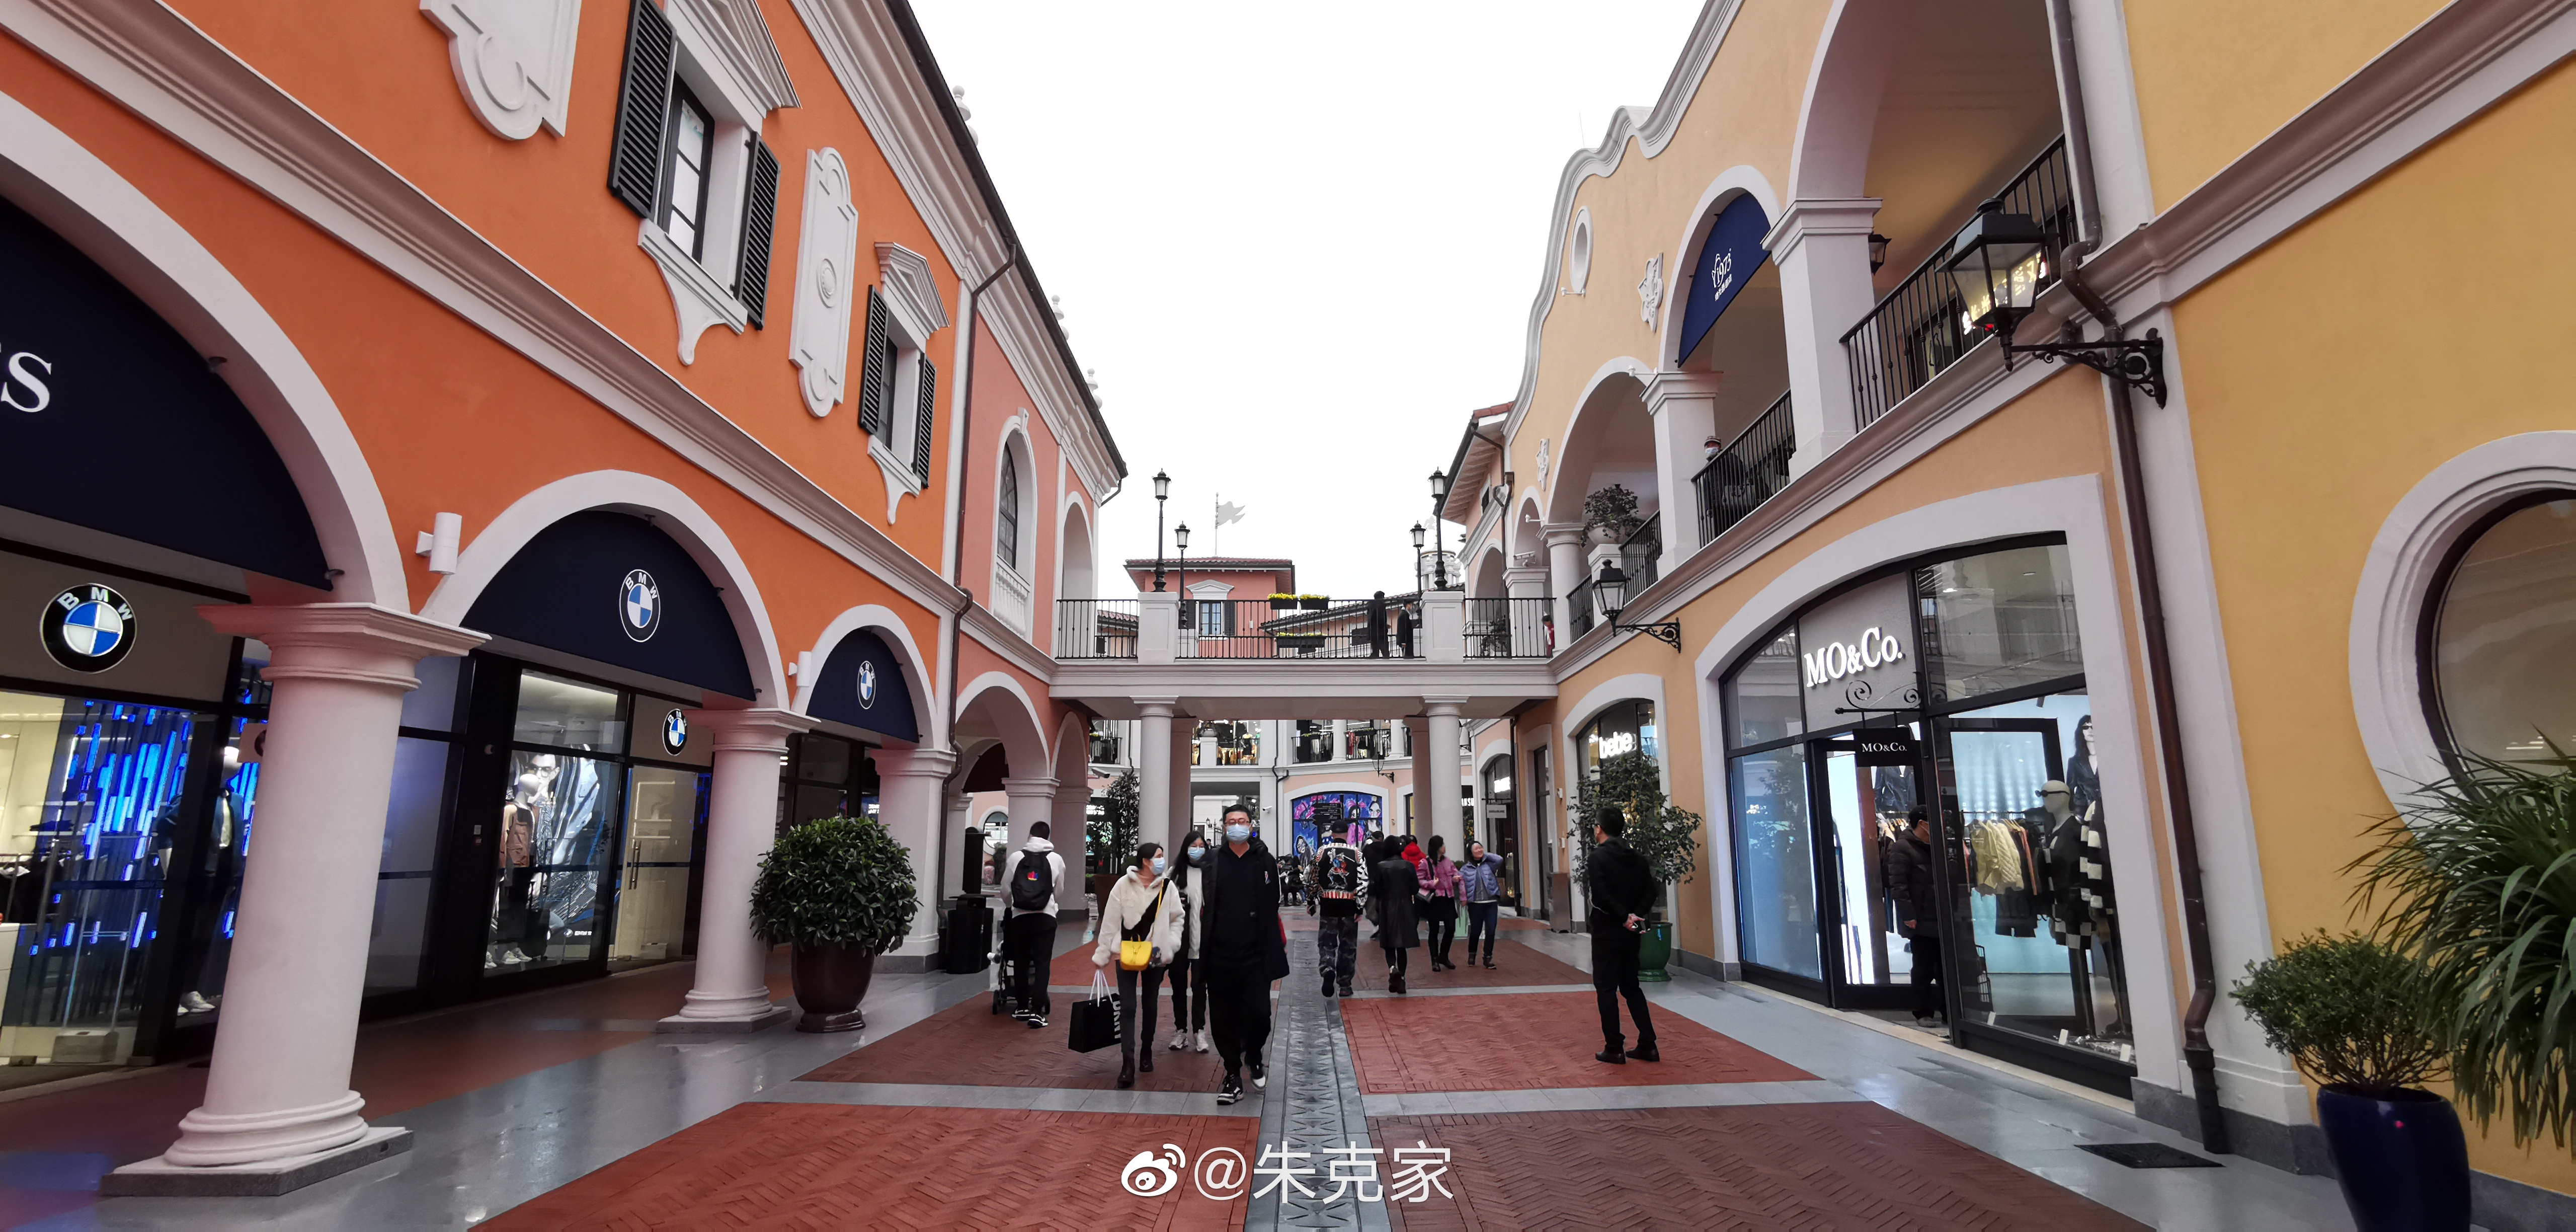 上海佛罗伦萨小镇图片